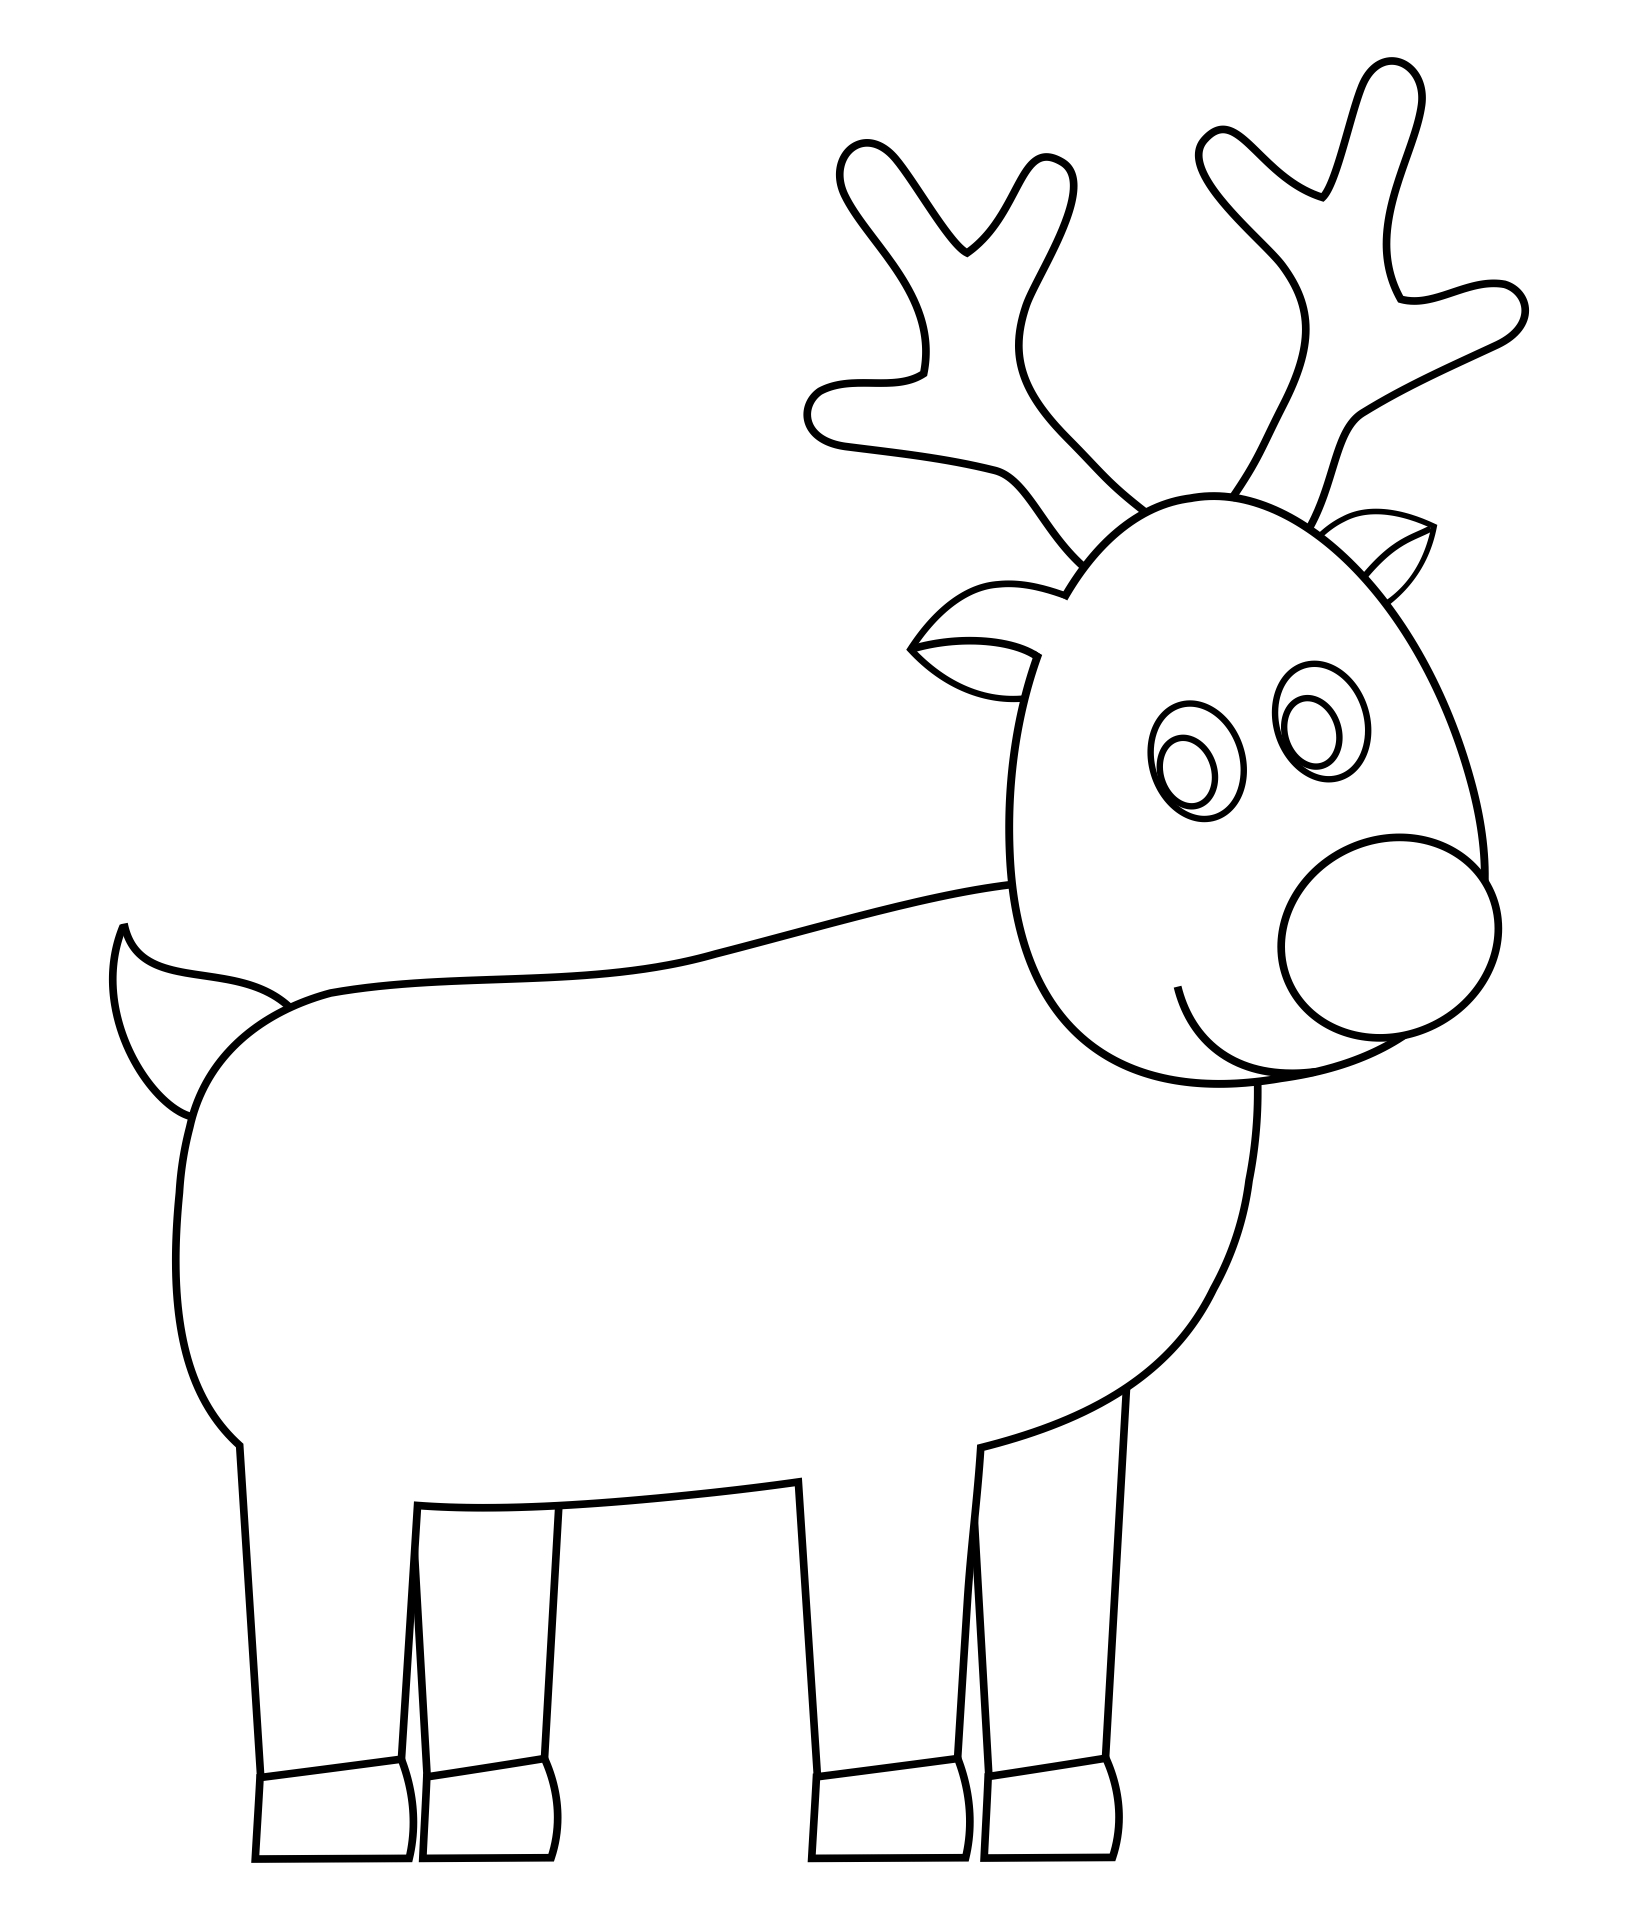 Printable Reindeer Patterns_71822